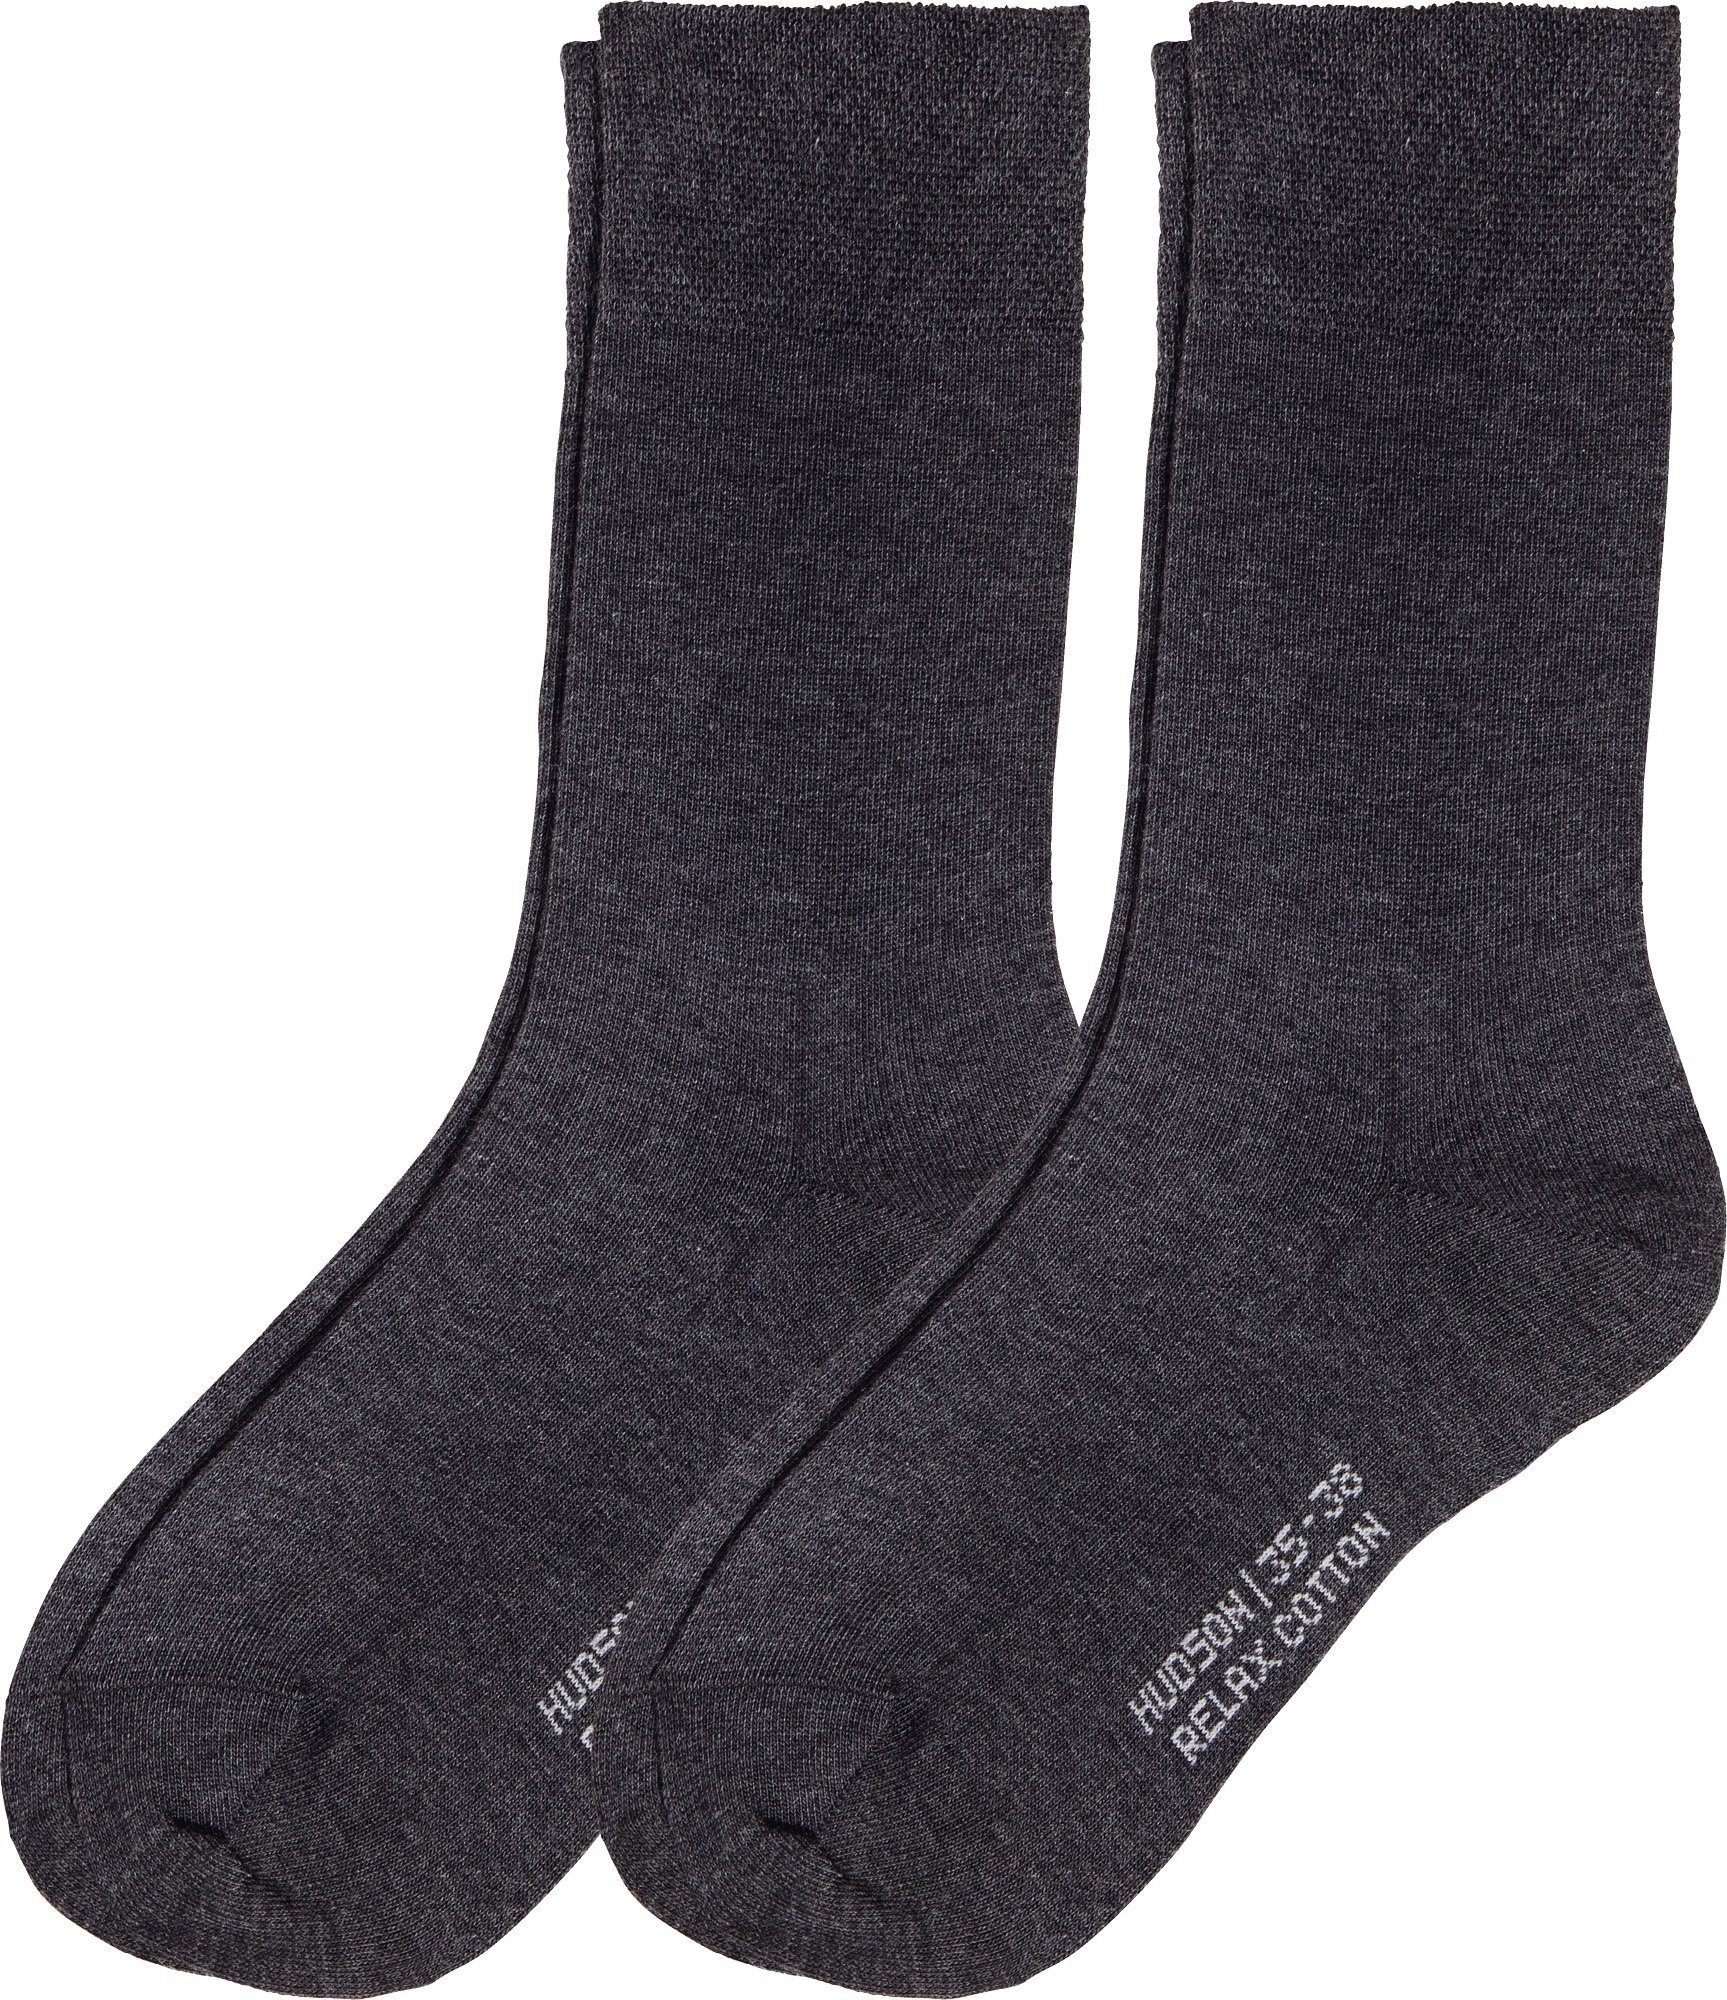 Hudson Socken Damen-Socken mit Softbund 2 Paar Uni graphit meliert